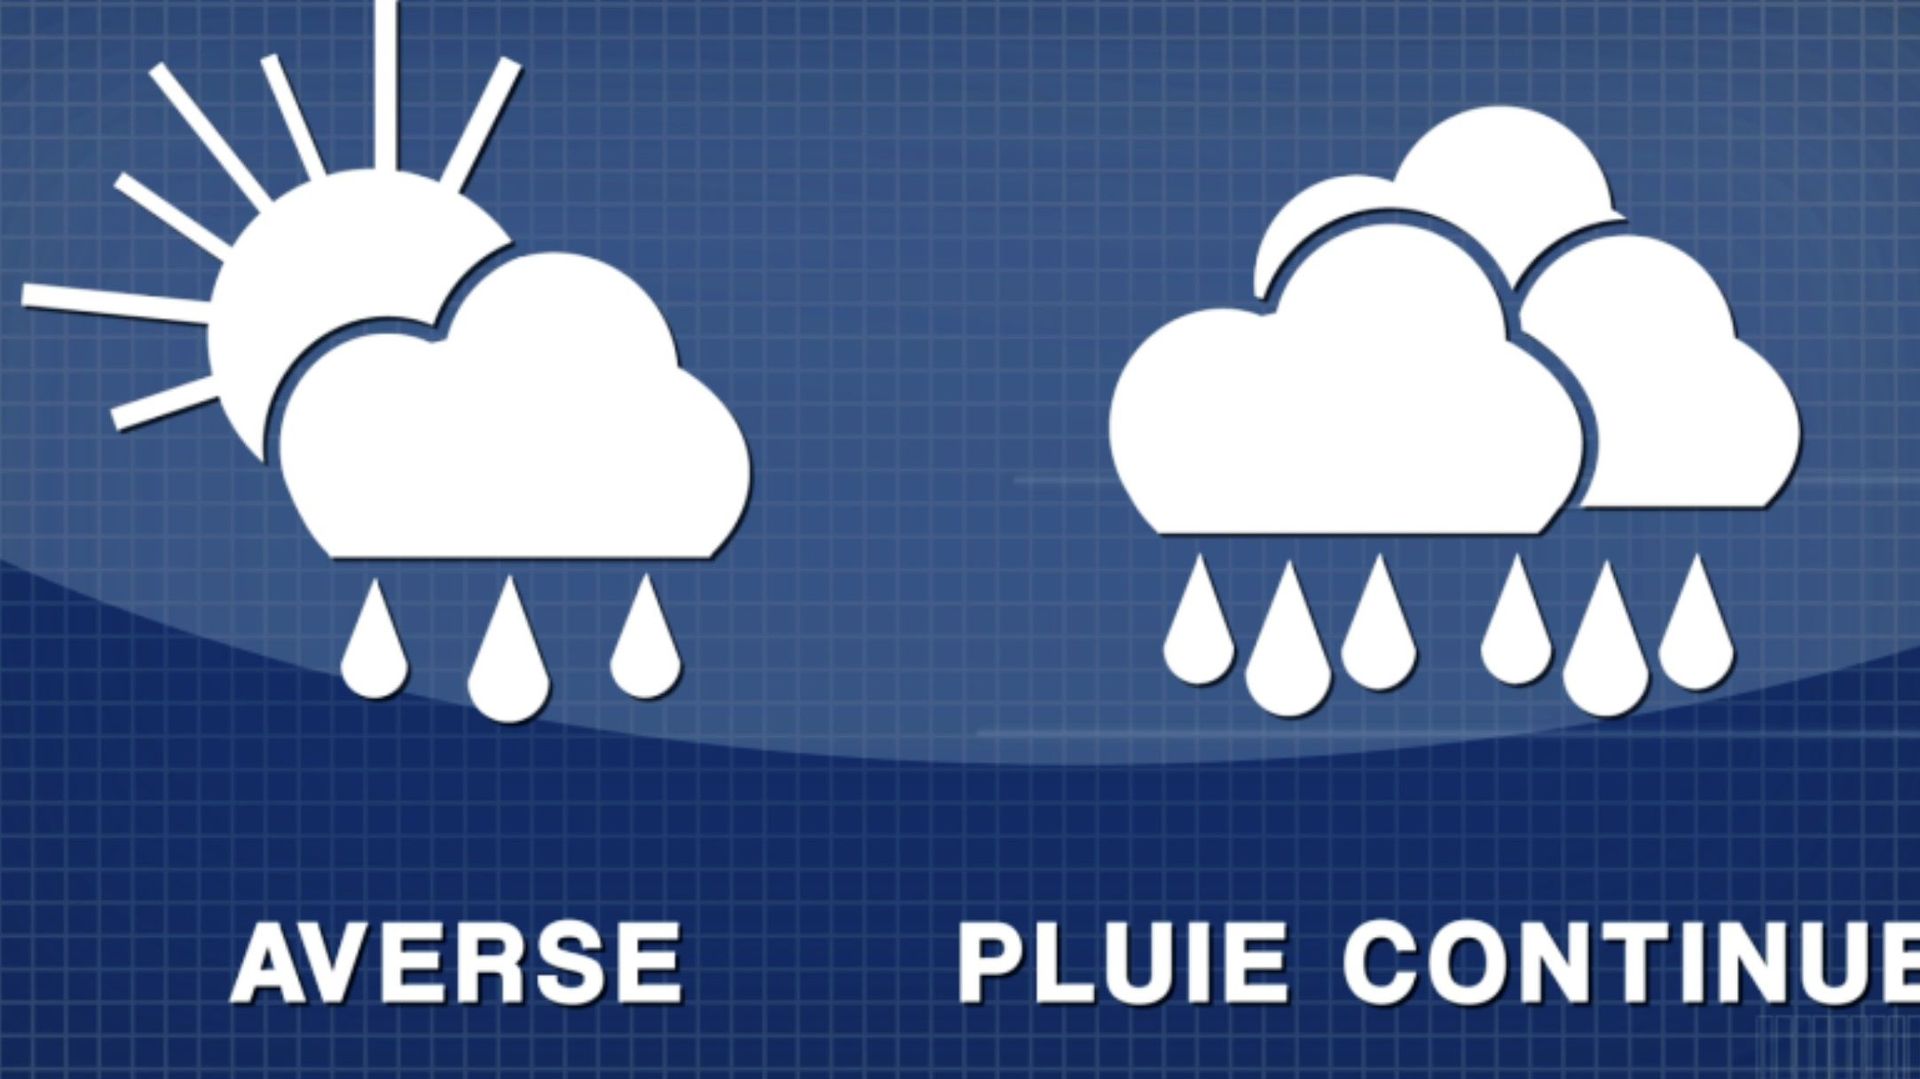 C'est quoi la différence entre pluie et averse?